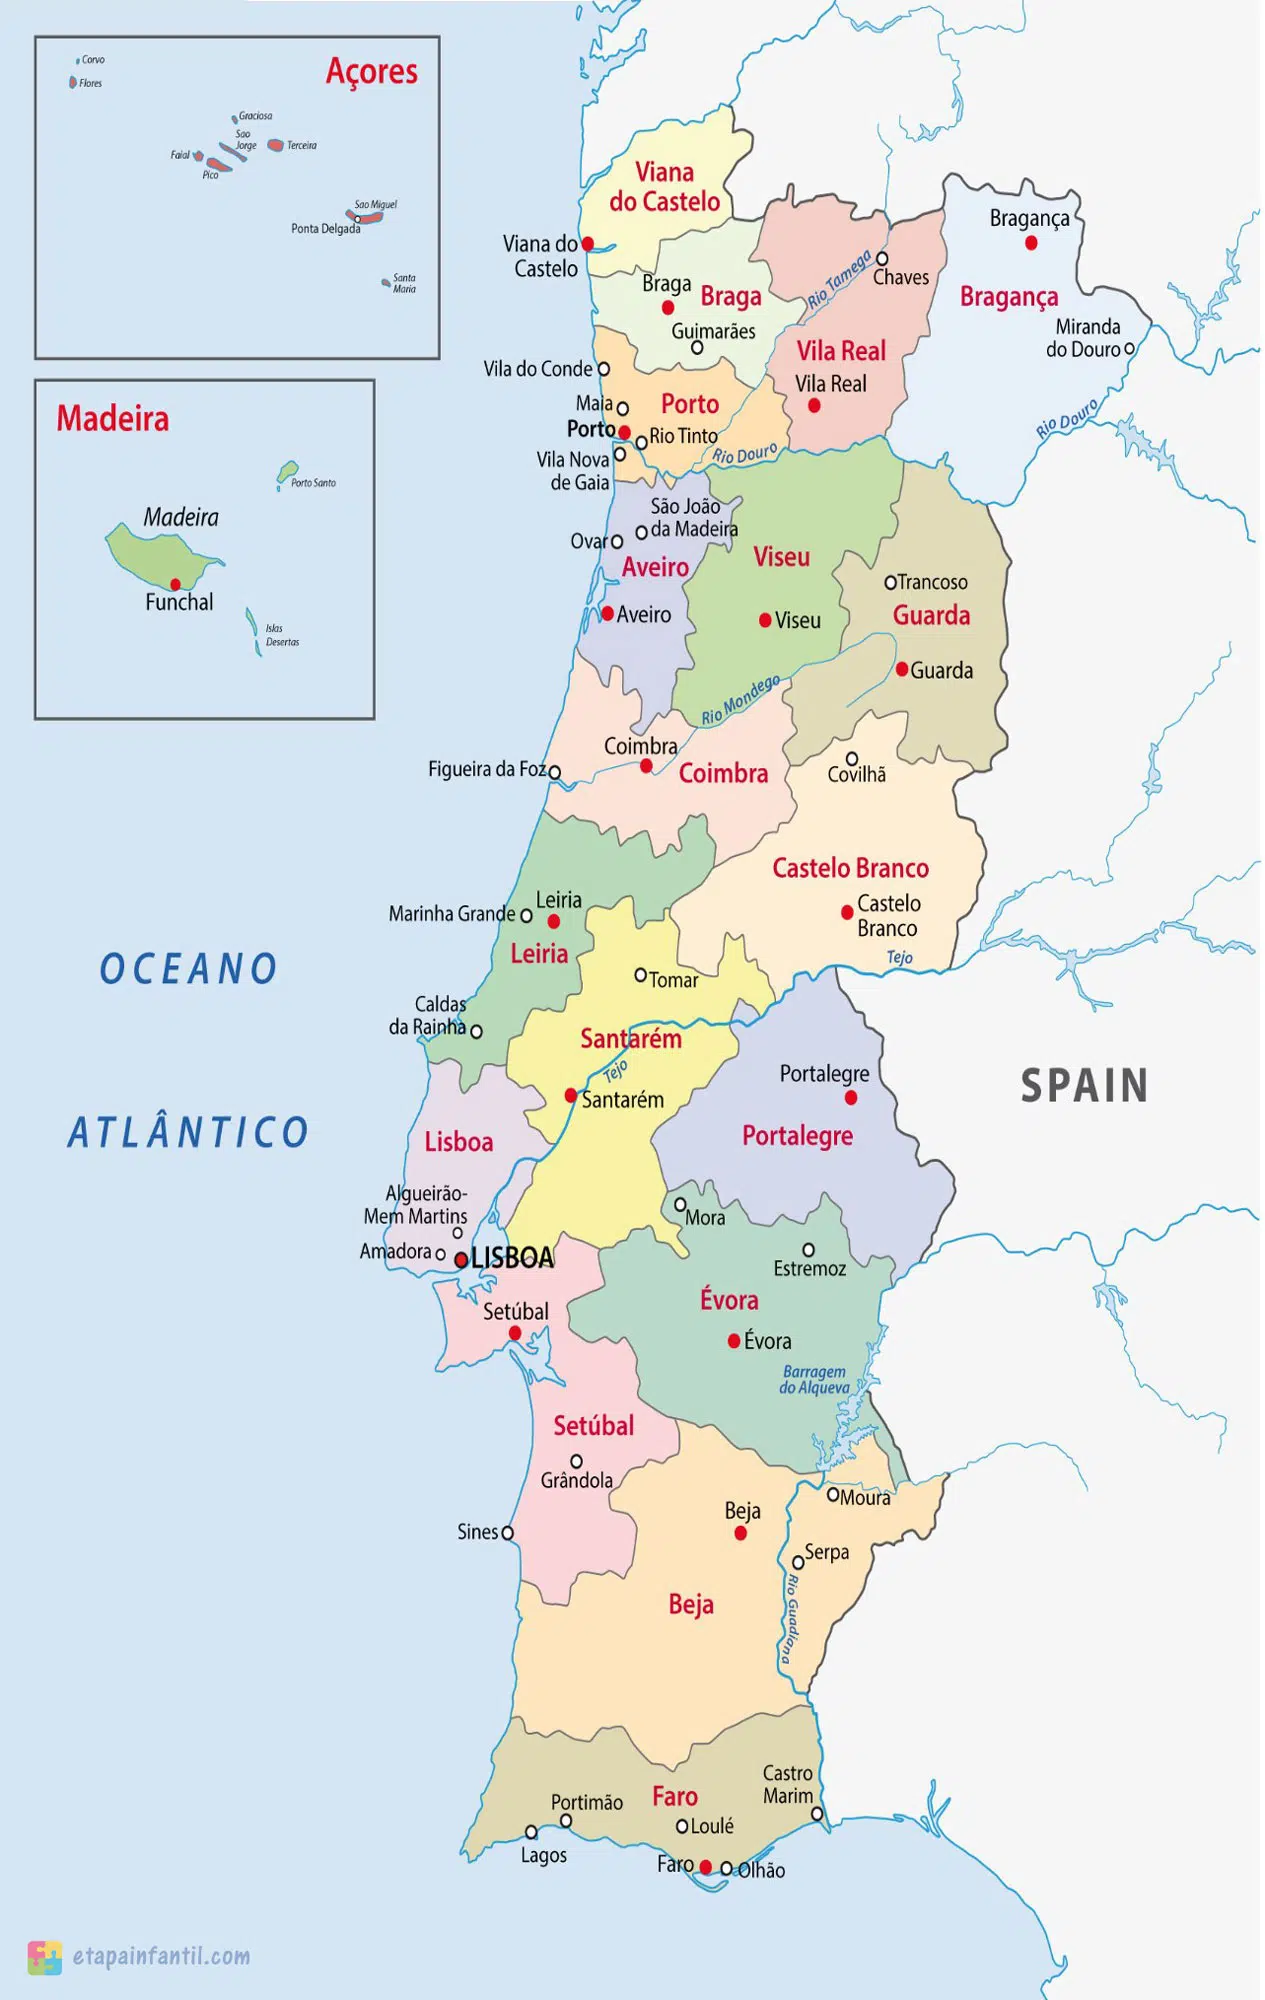 Mapa administrativo de Portugal para imprimir